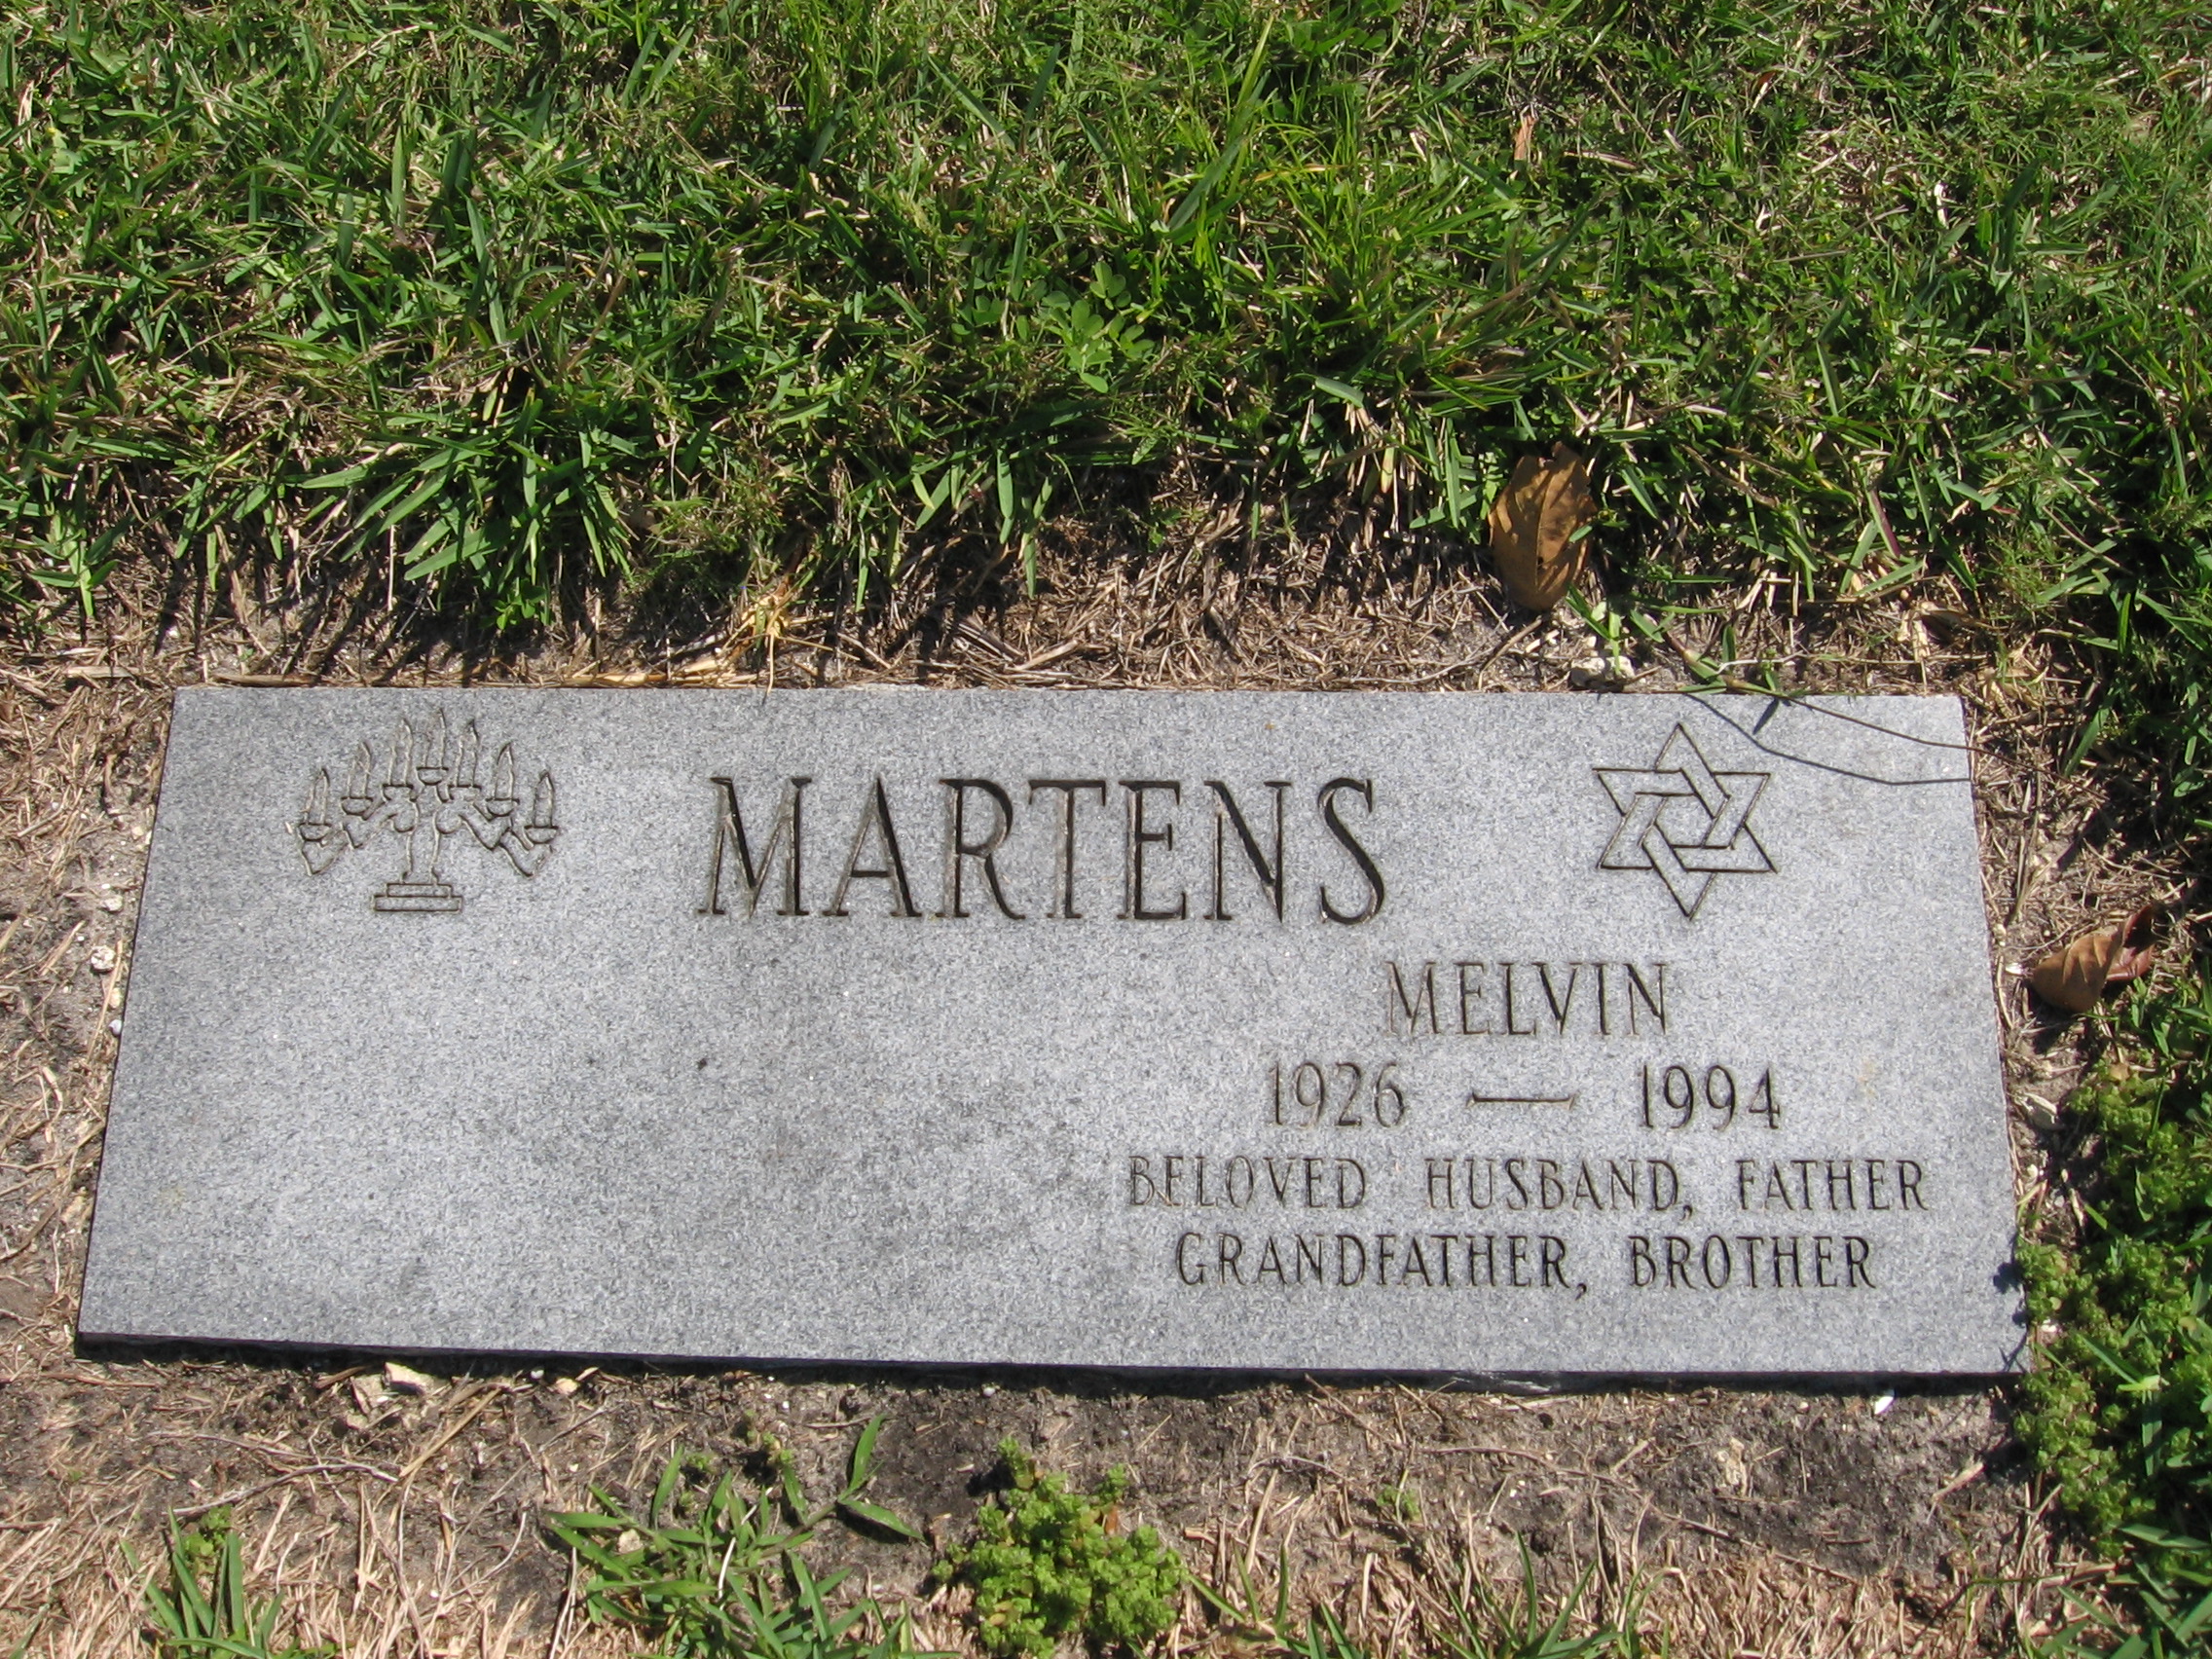 Melvin Martens